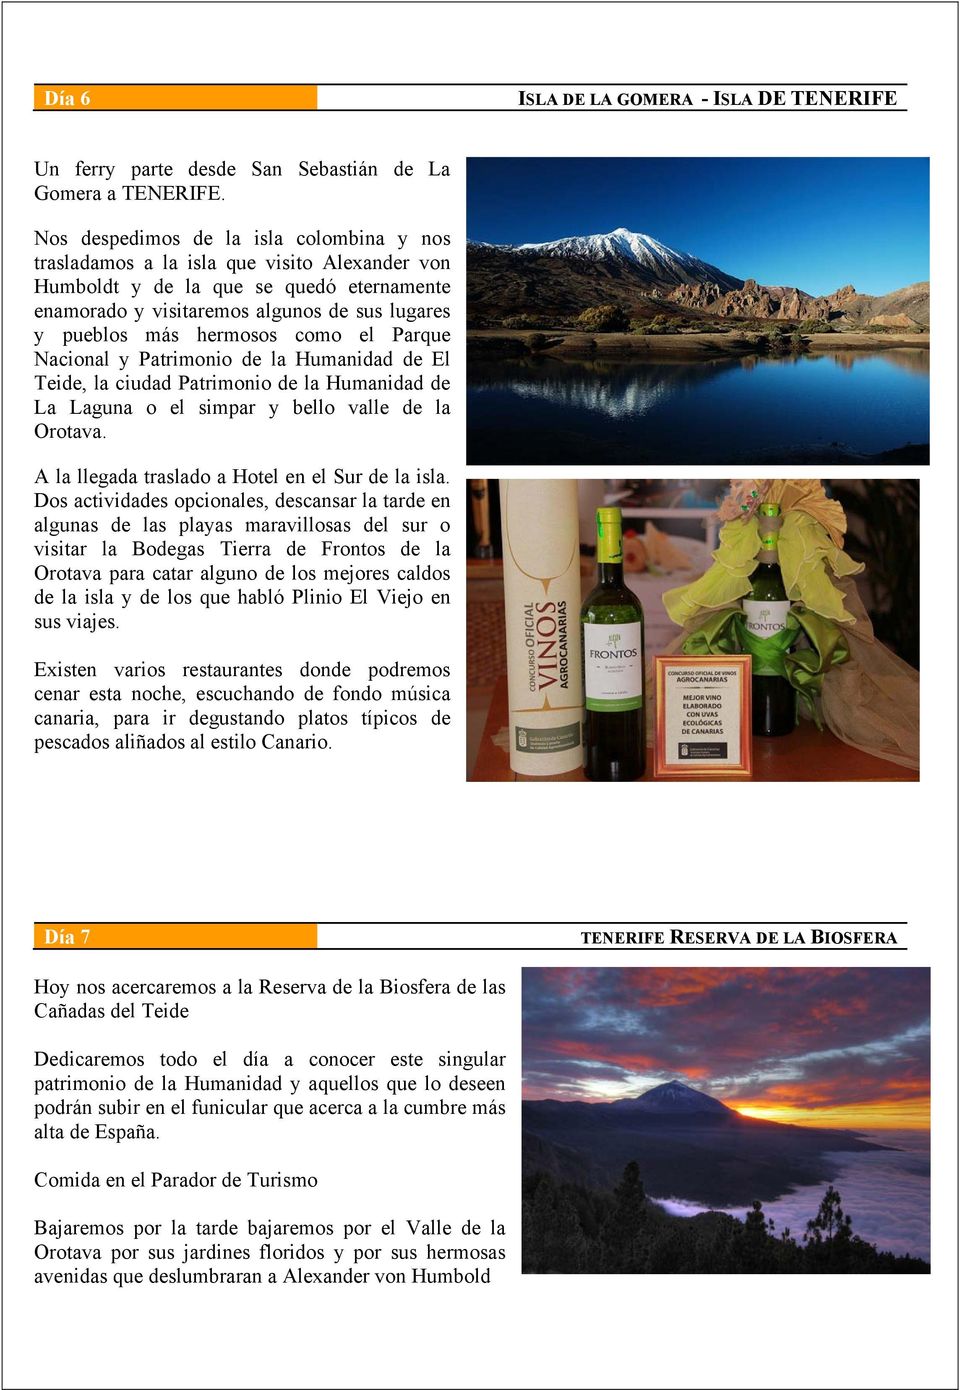 hermosos como el Parque Nacional y Patrimonio de la Humanidad de El Teide, la ciudad Patrimonio de la Humanidad de La Laguna o el simpar y bello valle de la Orotava.